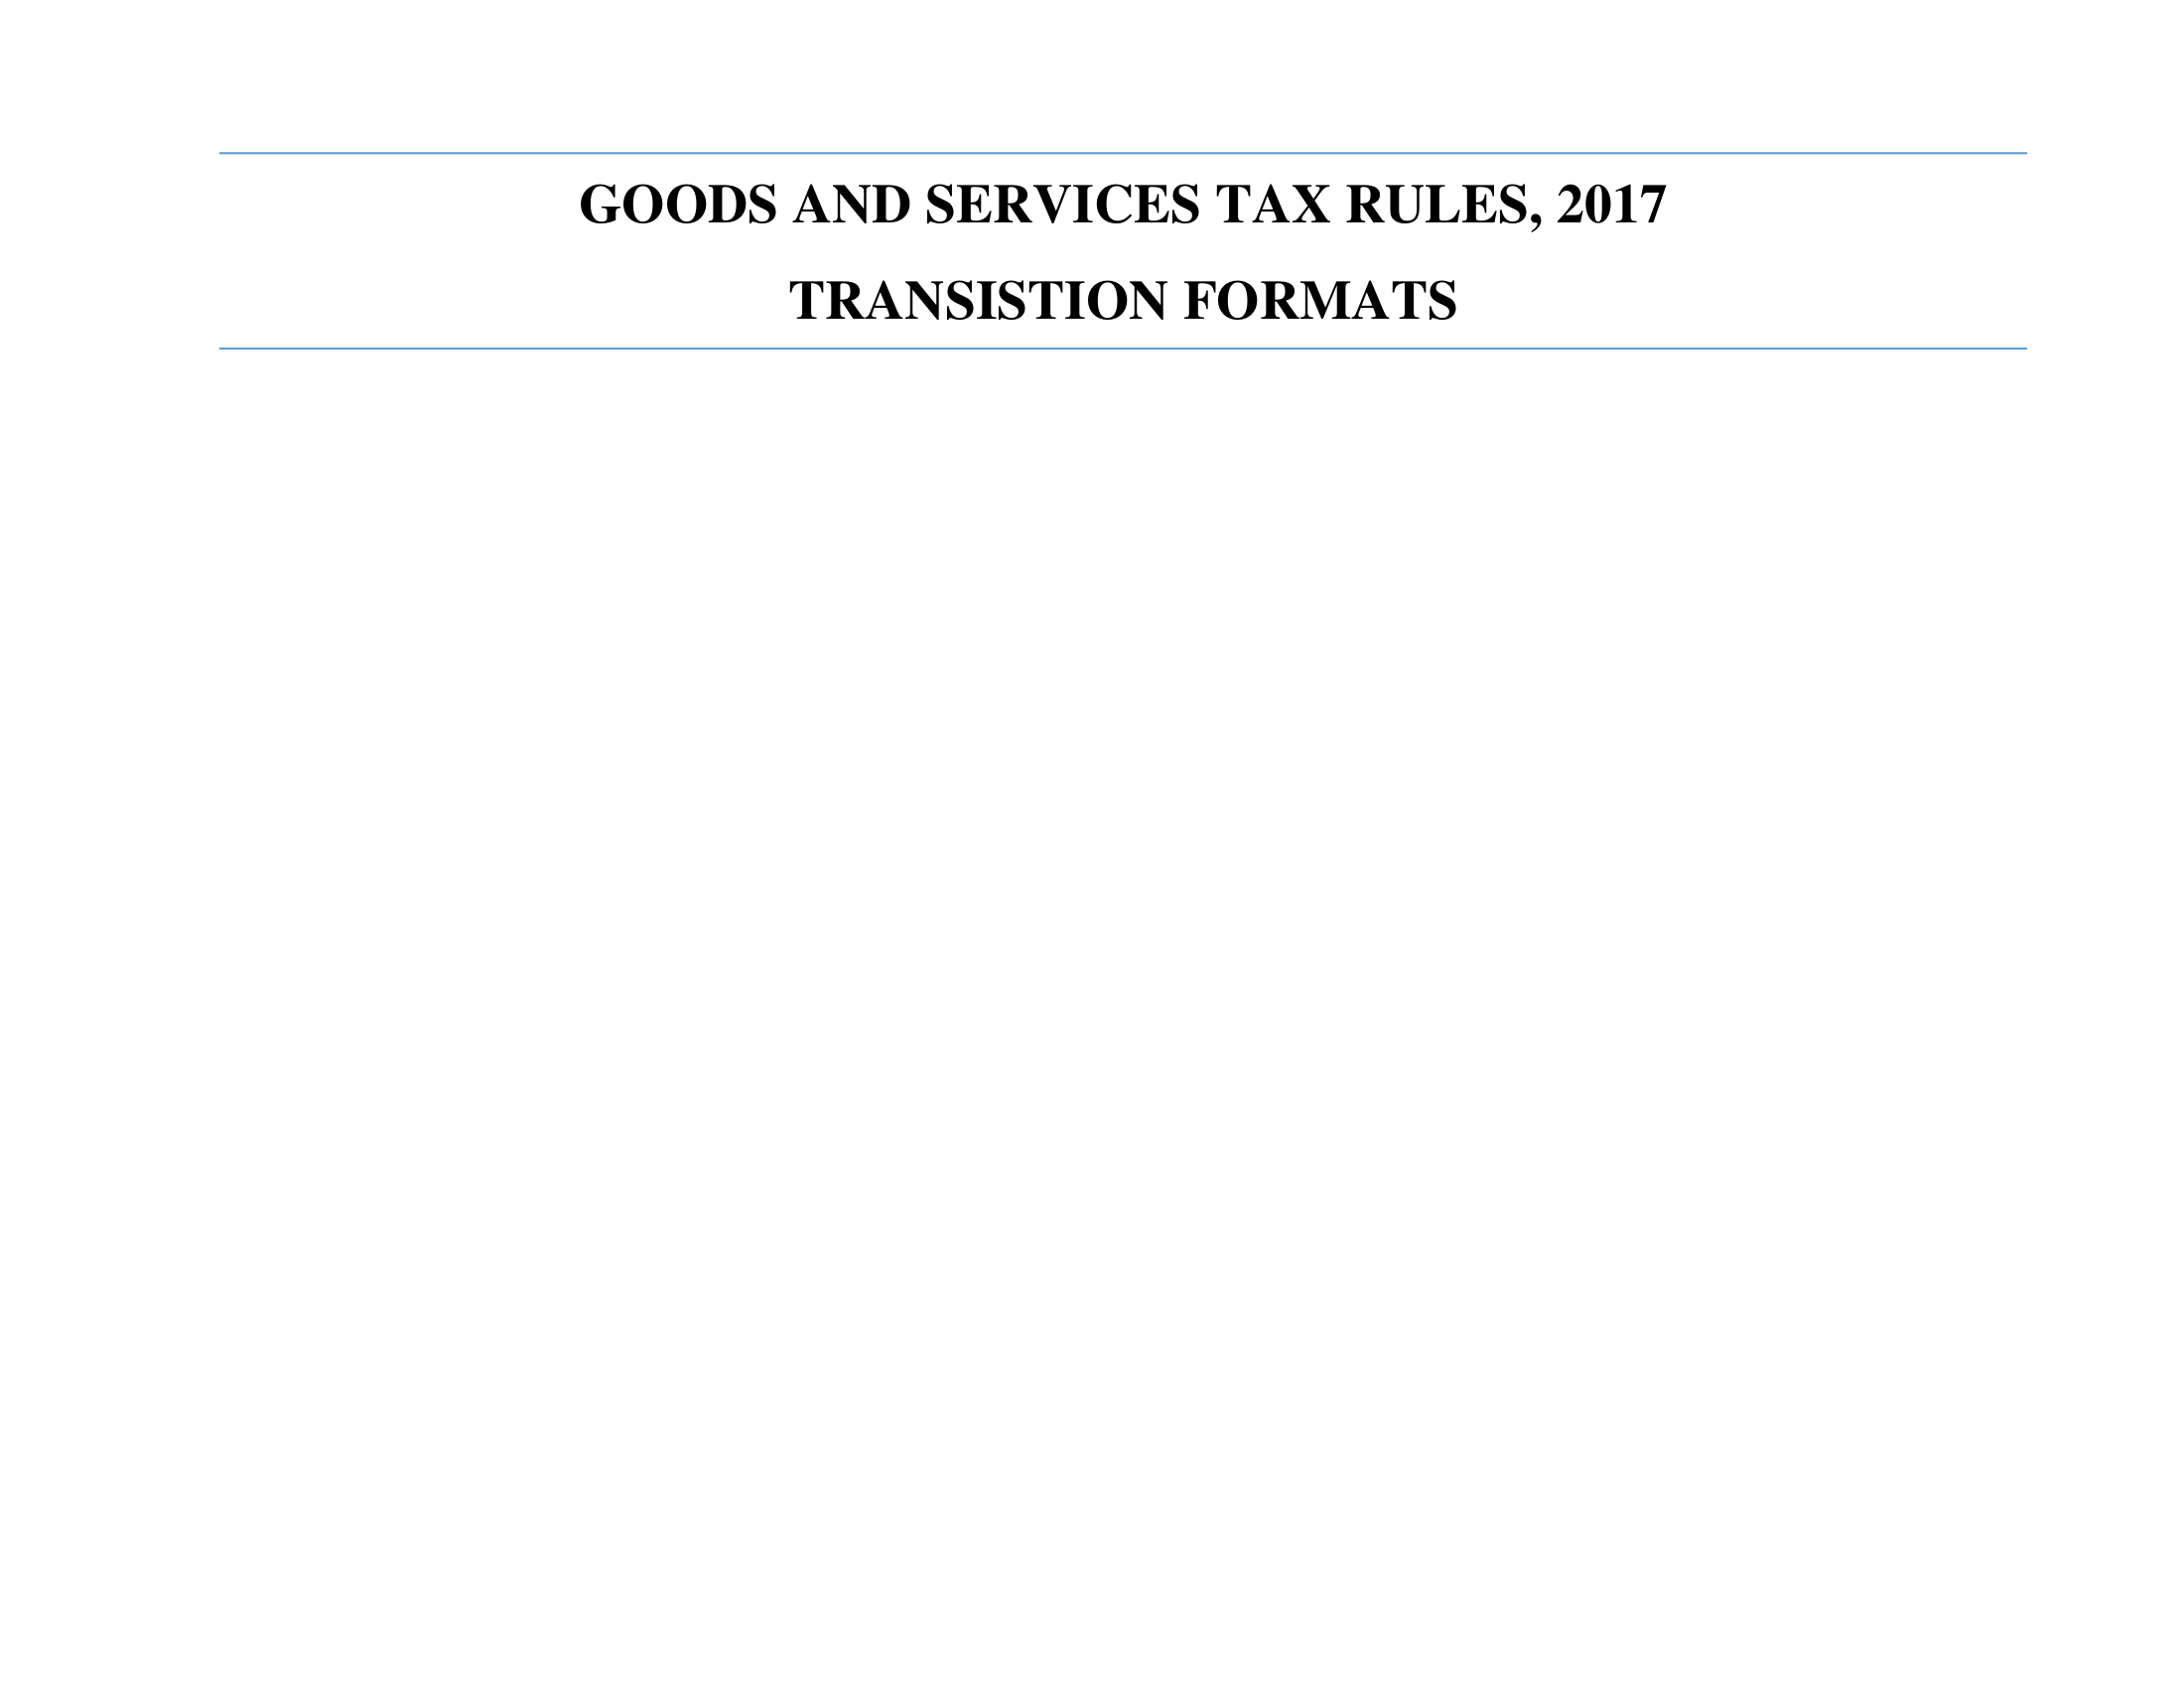 GST transition form formats